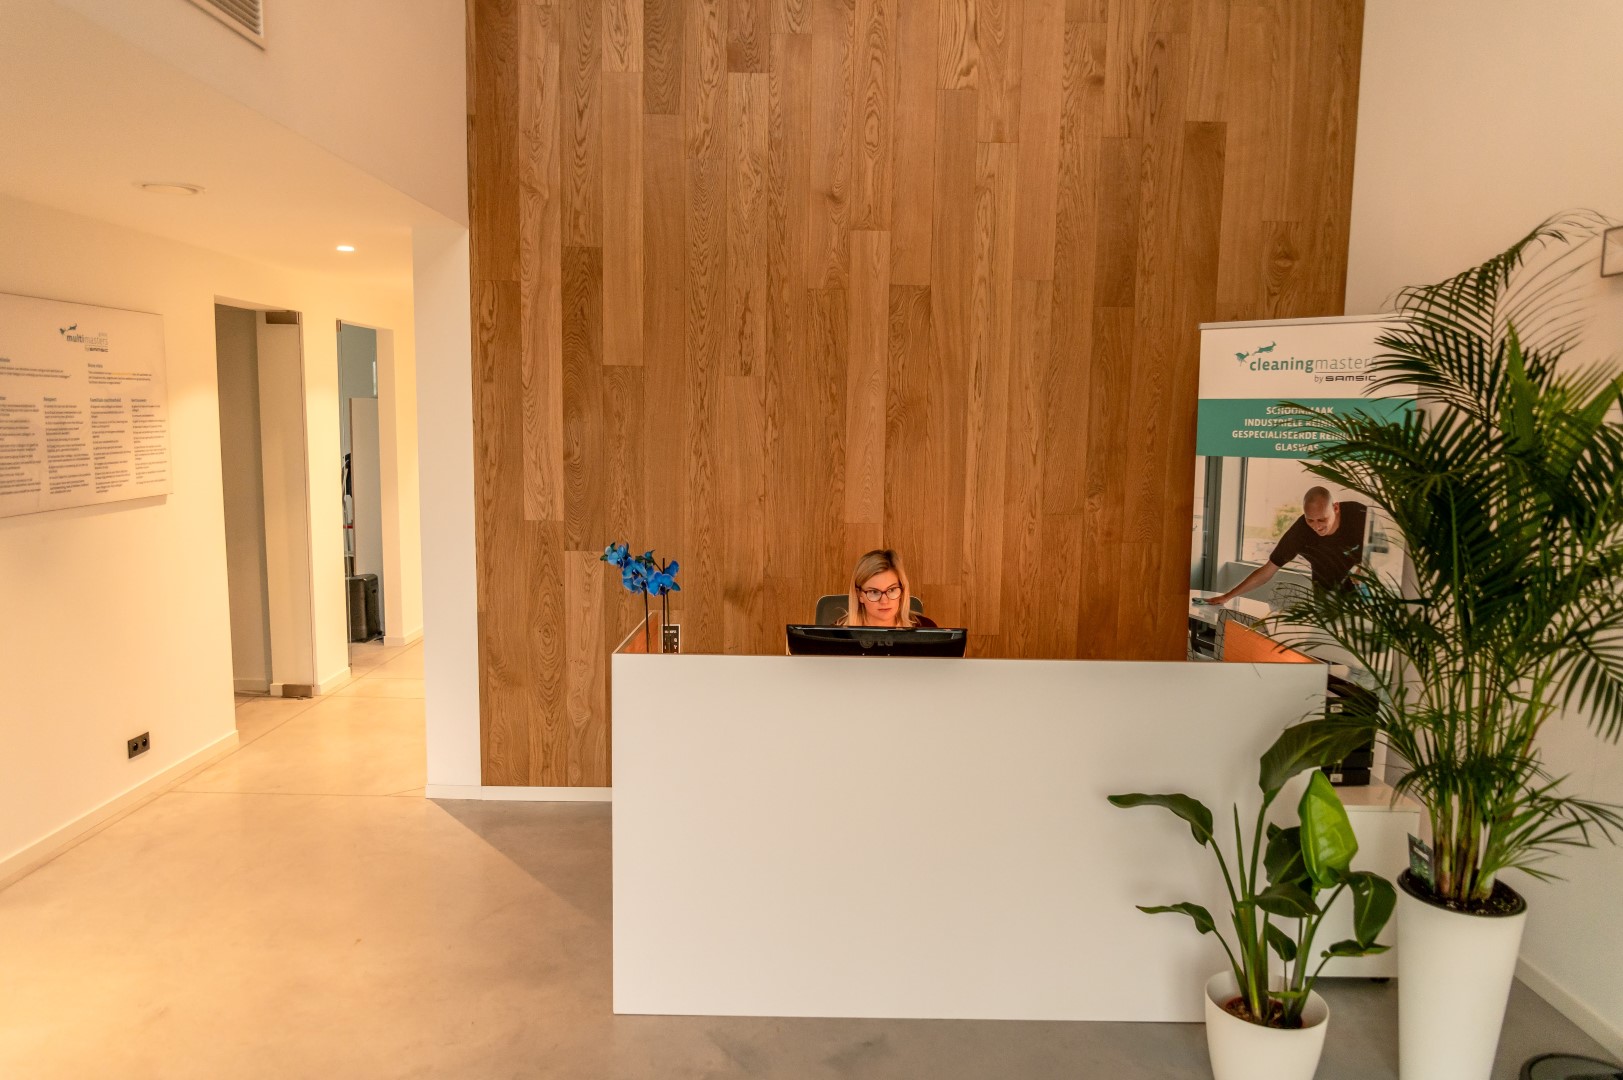 Multi Masters Group is in Roeselare verhuisd naar een nieuw gebouw. Het nieuwe adres: Krommebeekpark 29 - 8800 Roeselare.